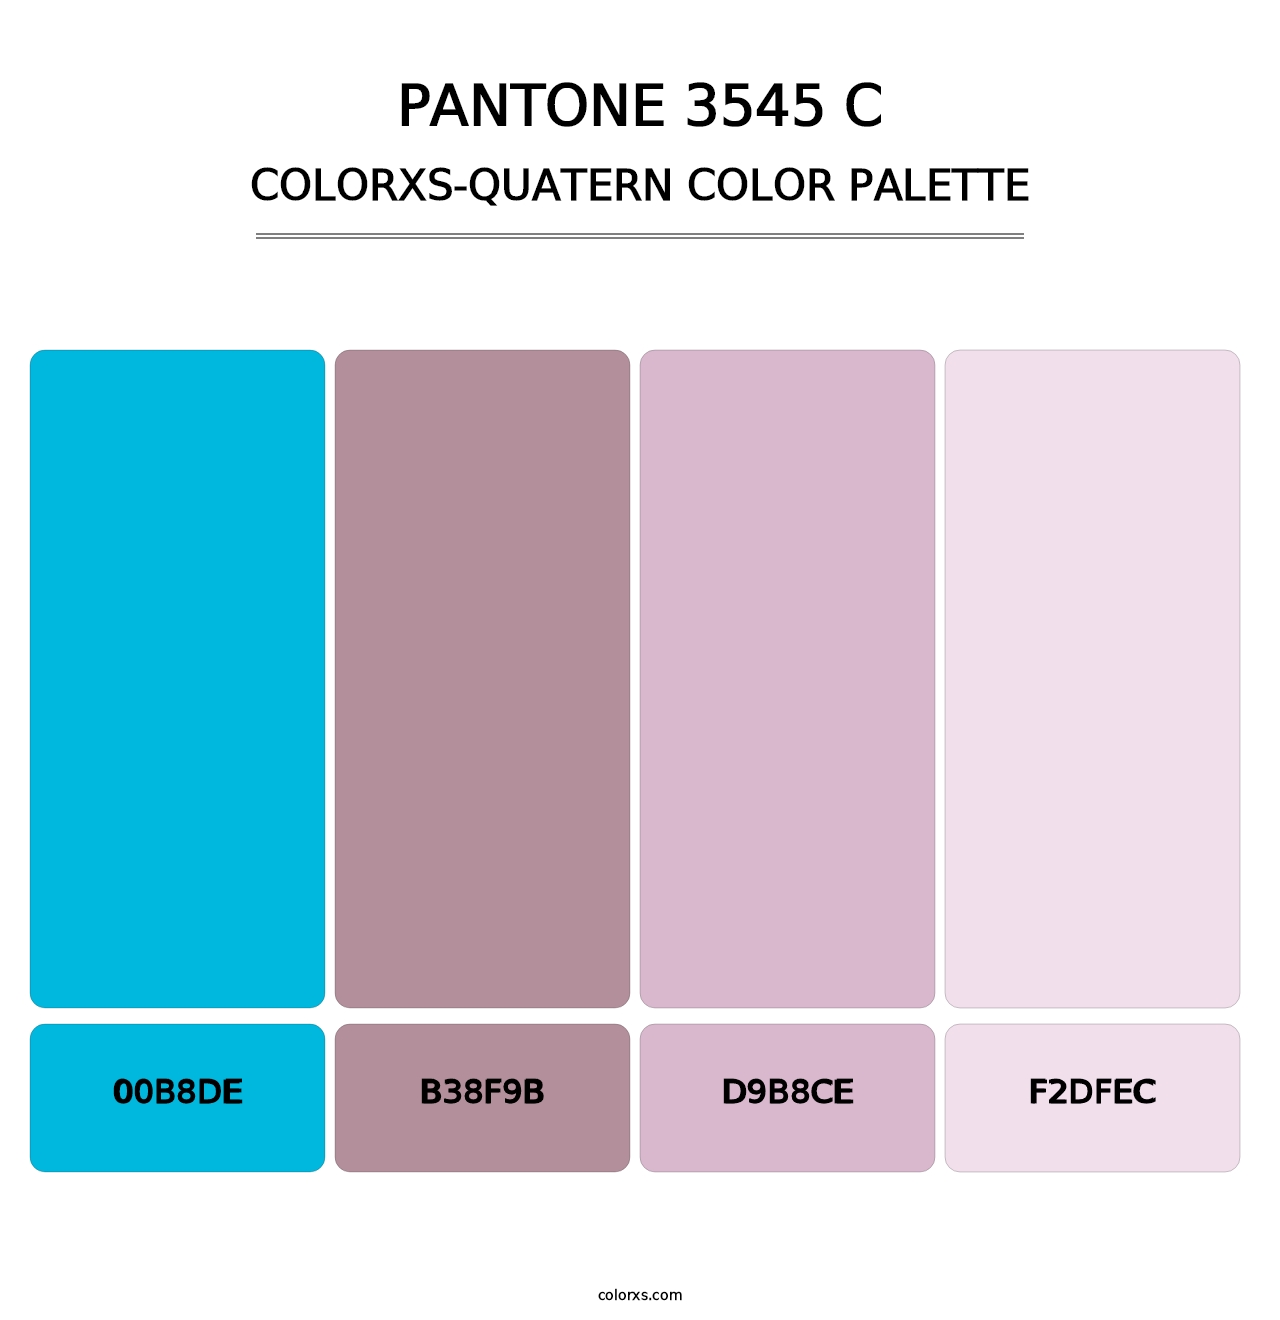 PANTONE 3545 C - Colorxs Quatern Palette